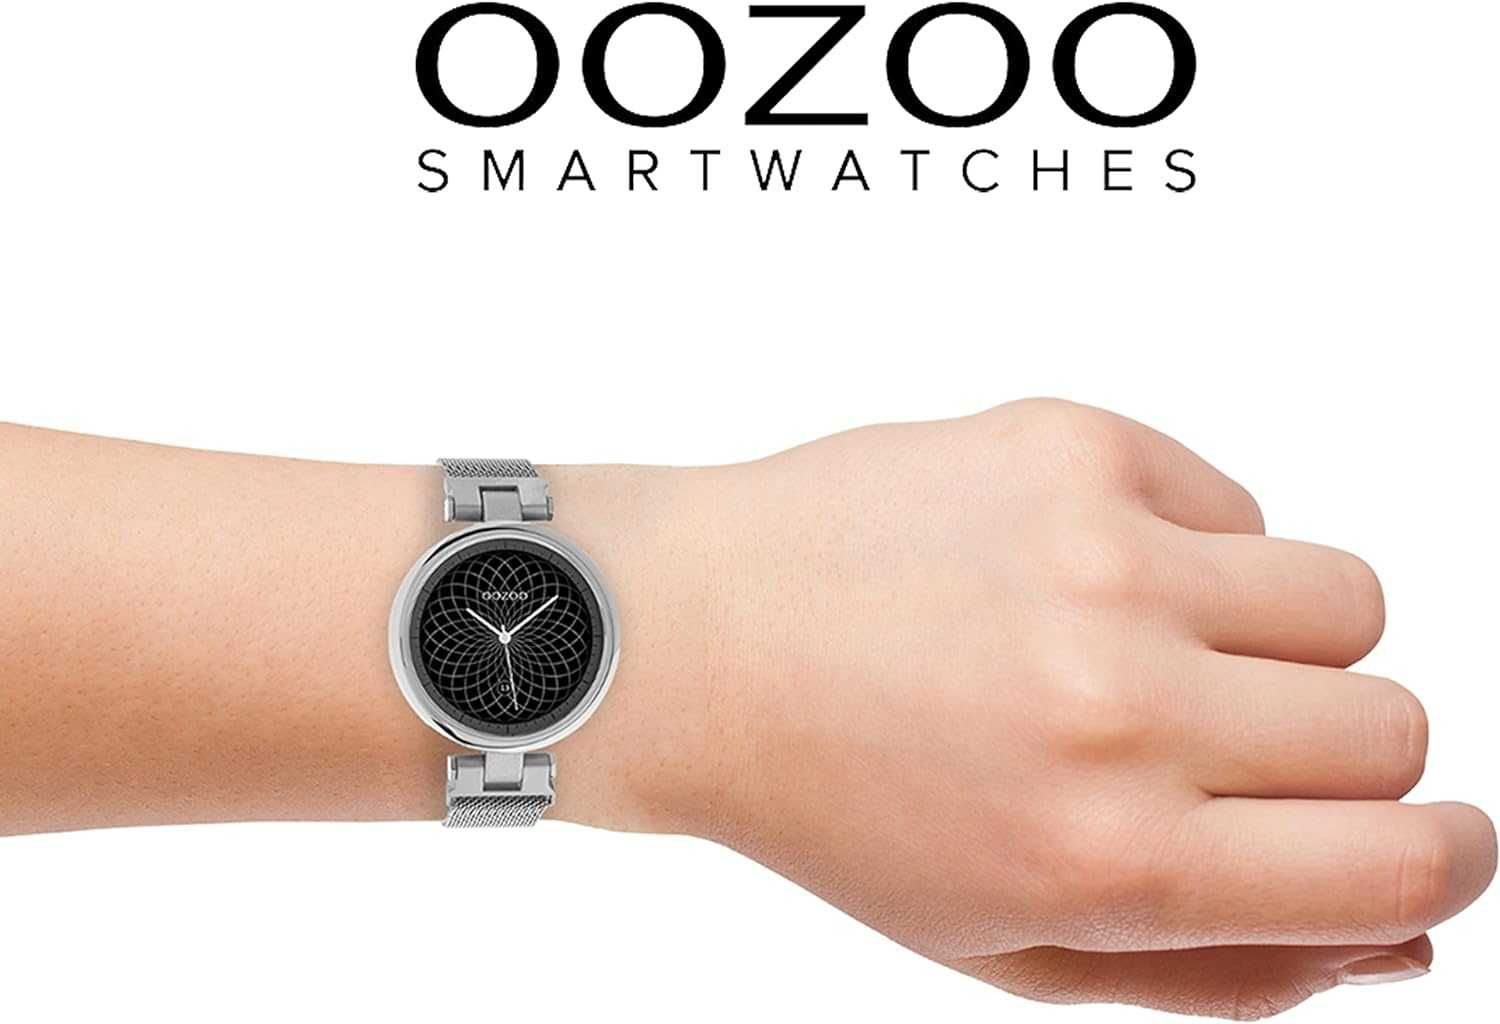 Smartwatch Zegarek fitness unisex 39 mm dla kobiet i mężczyzn Oozoo